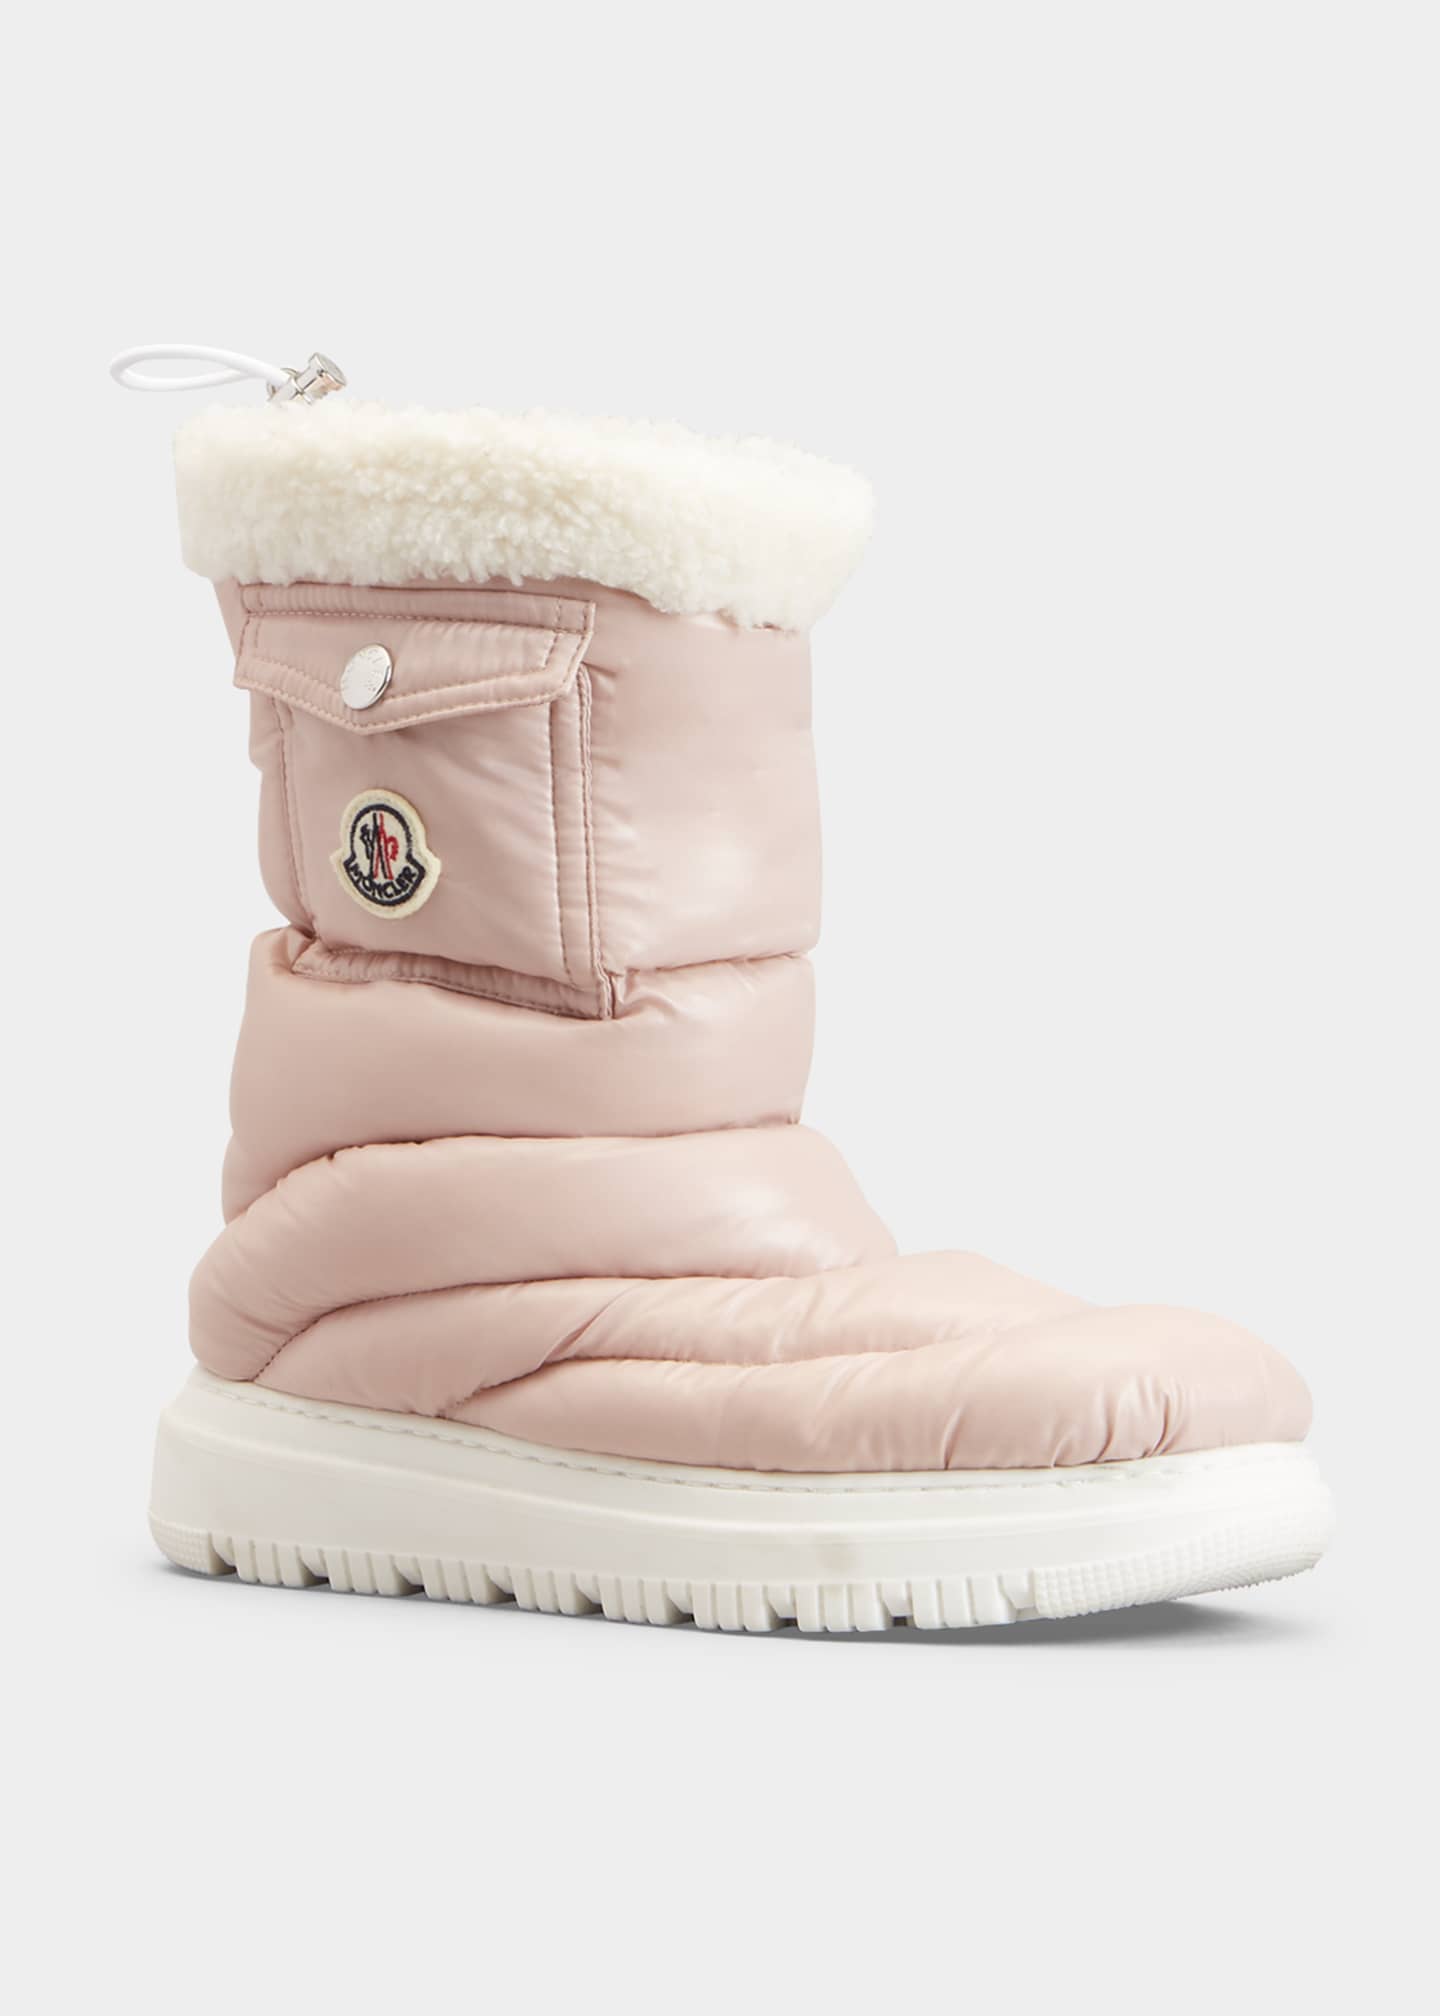 Moncler Girl's Petit Gaia Snow Boots, Toddlers/Kids - Bergdorf Goodman